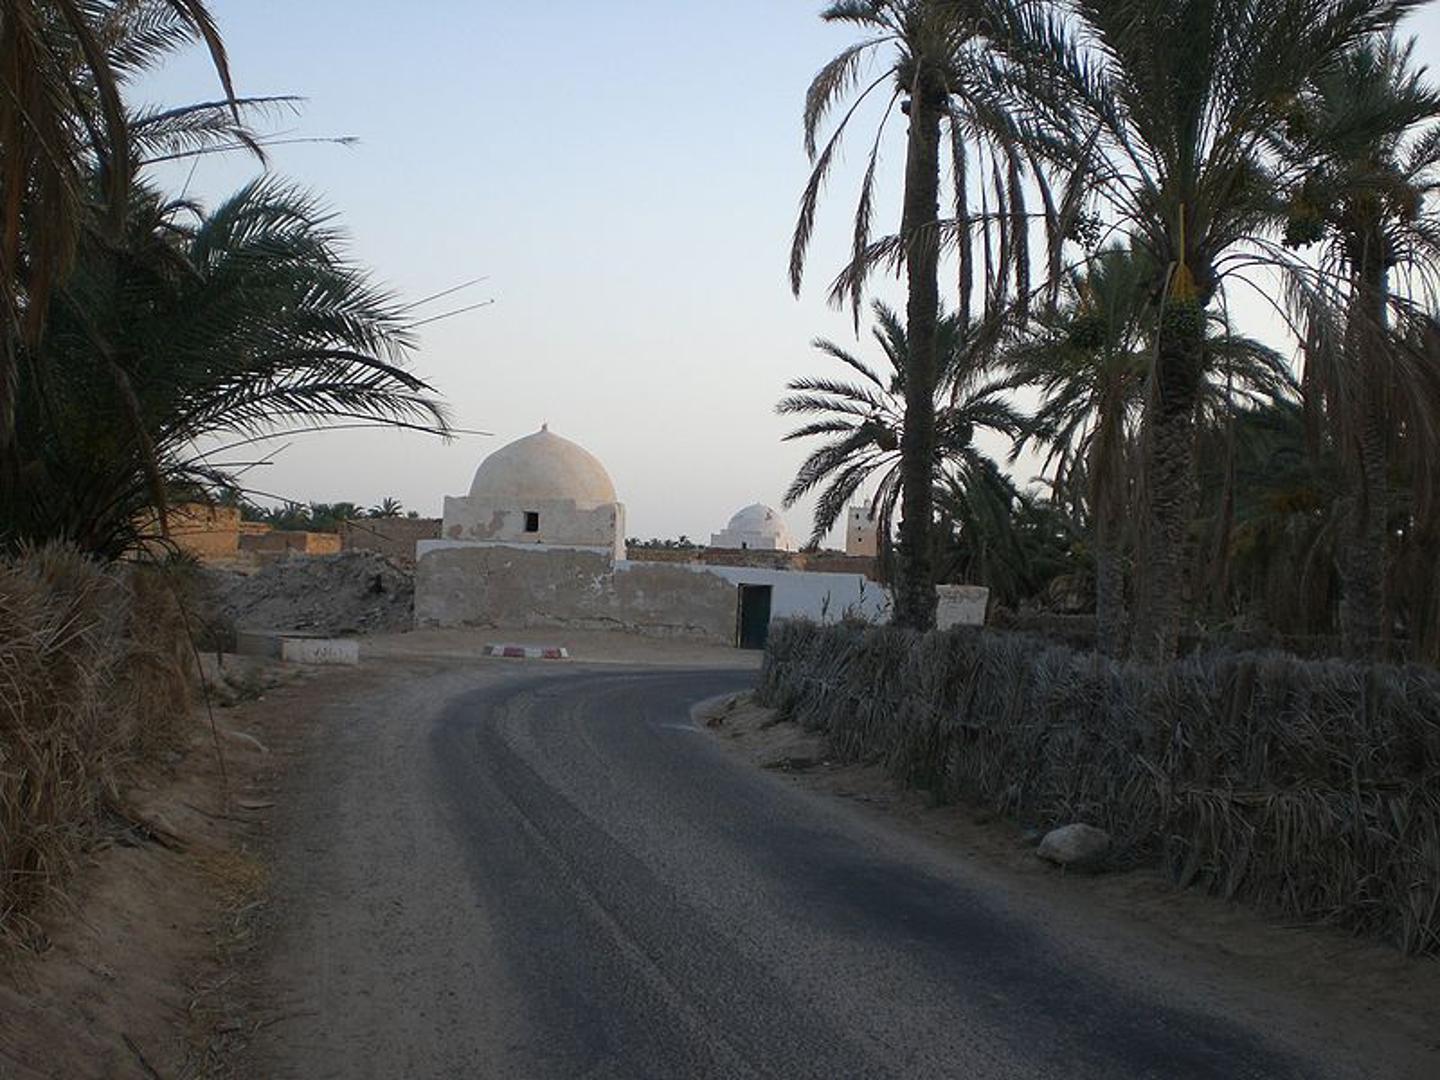 8. Kebili, Tunis - Zidine tuniškog grada otporne su na prosječnih 40 stupnjeva, kao i na najveću zabilježenu - 55 Celzijevih.

